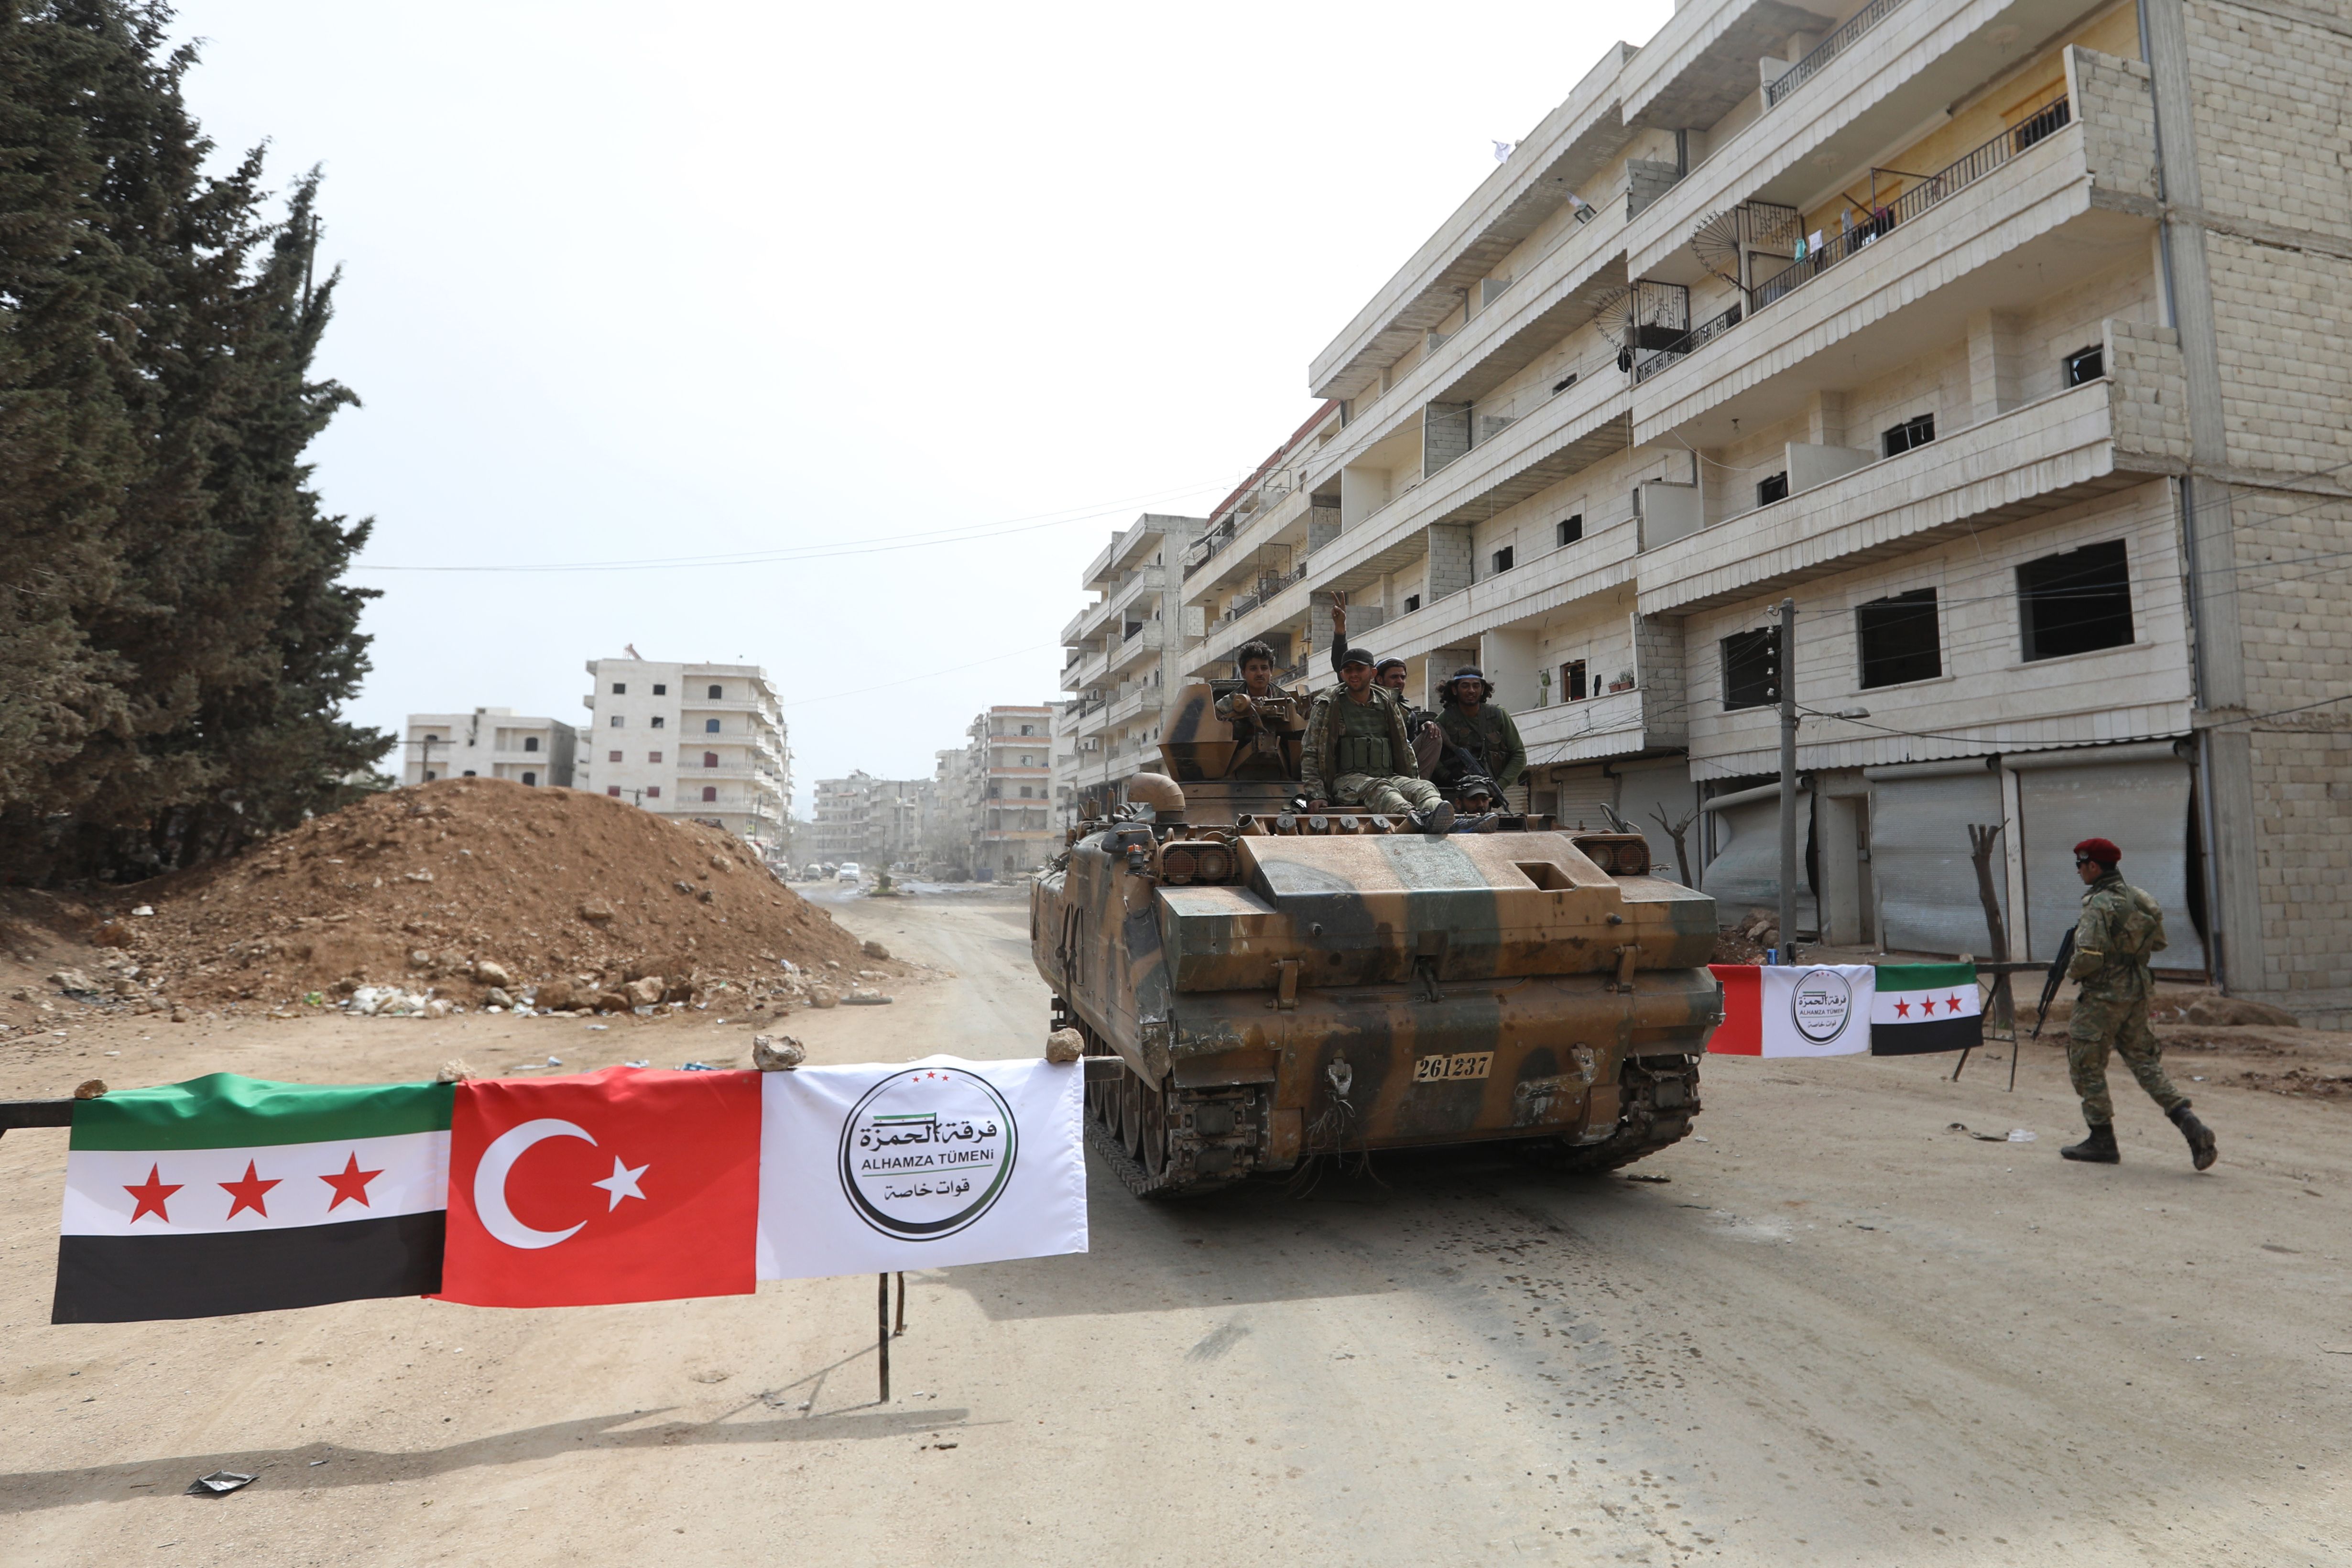  رفع العلم التركى بجانب العلم السورى 